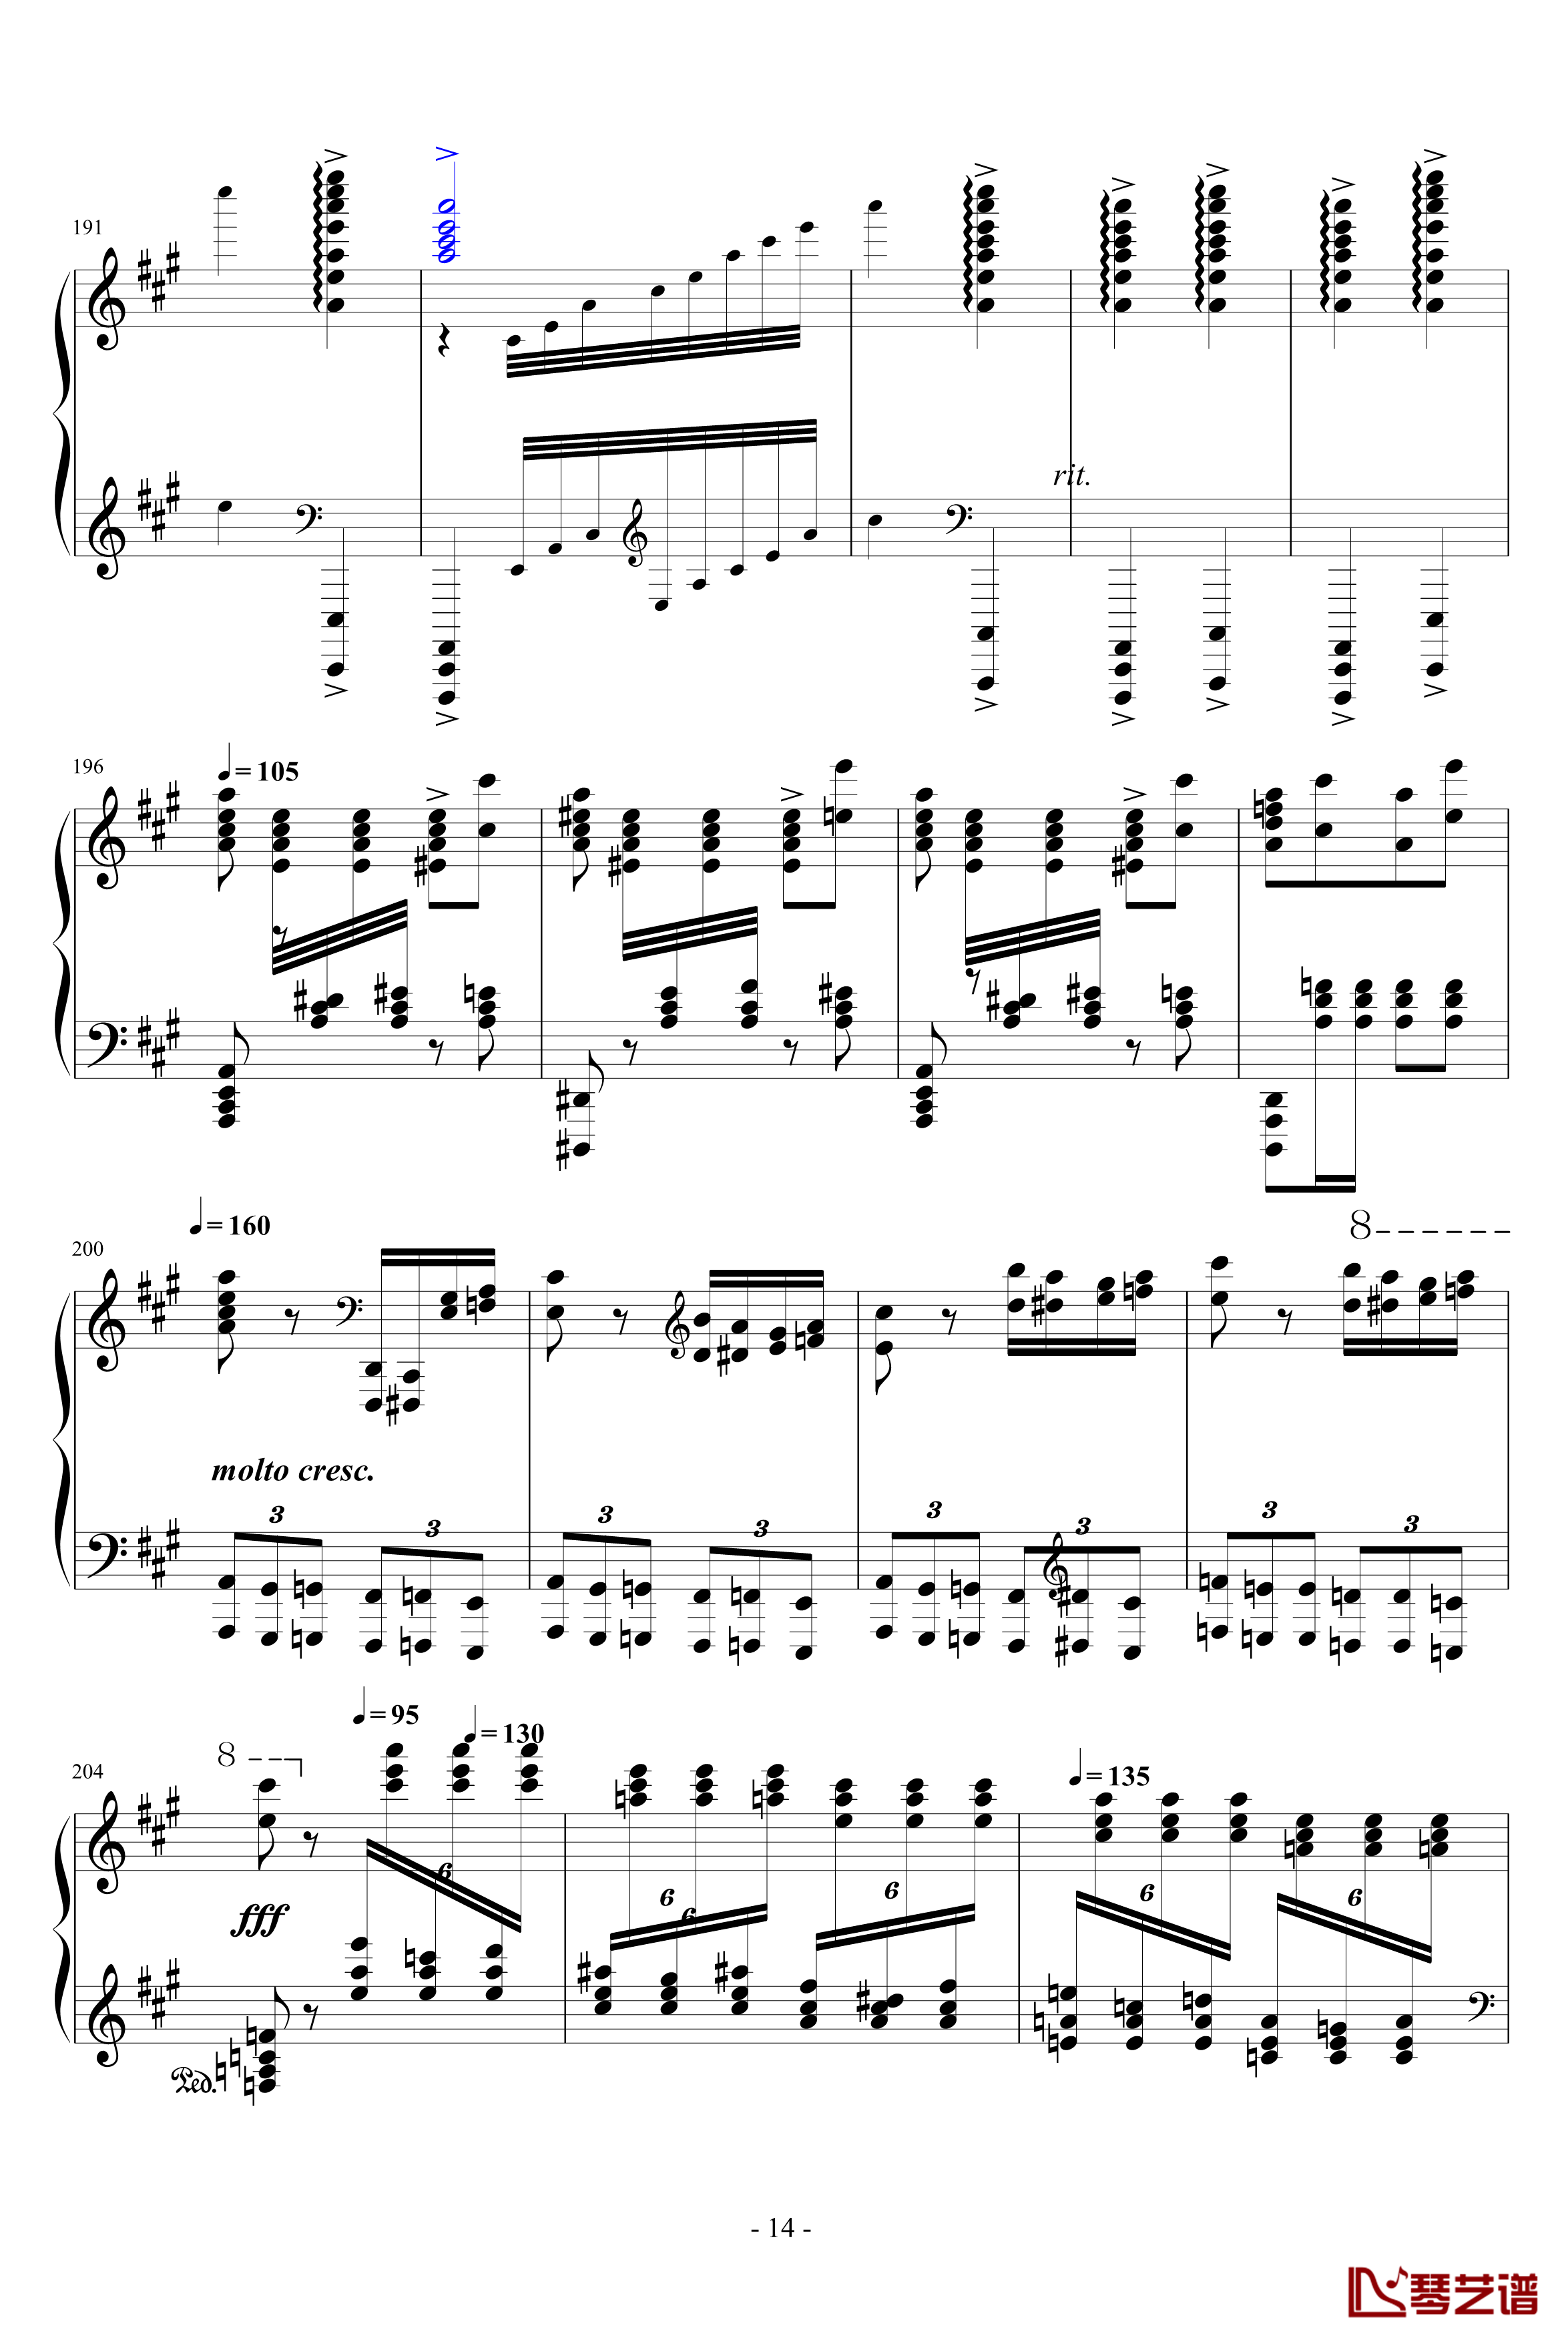 瓦洛多斯土耳其钢琴谱-爵士版-完成品-瓦洛多斯14